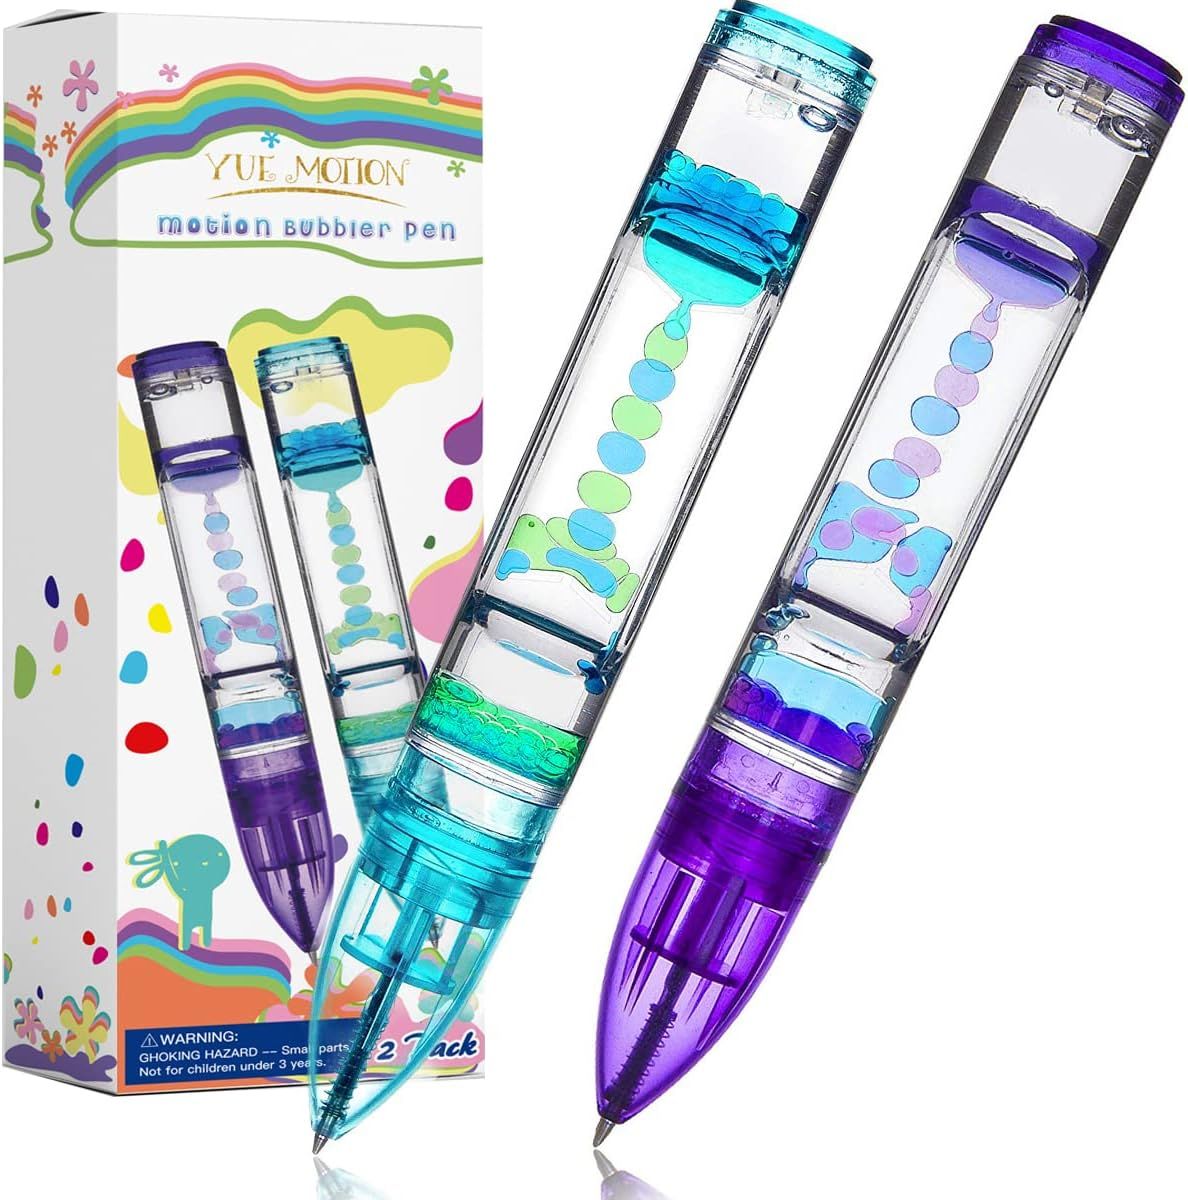 YUE Action Liquid Motion Timer Pen 2 Pack / Liquid Timer Pen / Multi Colored Fidget Pen for Office D | Amazon (US)